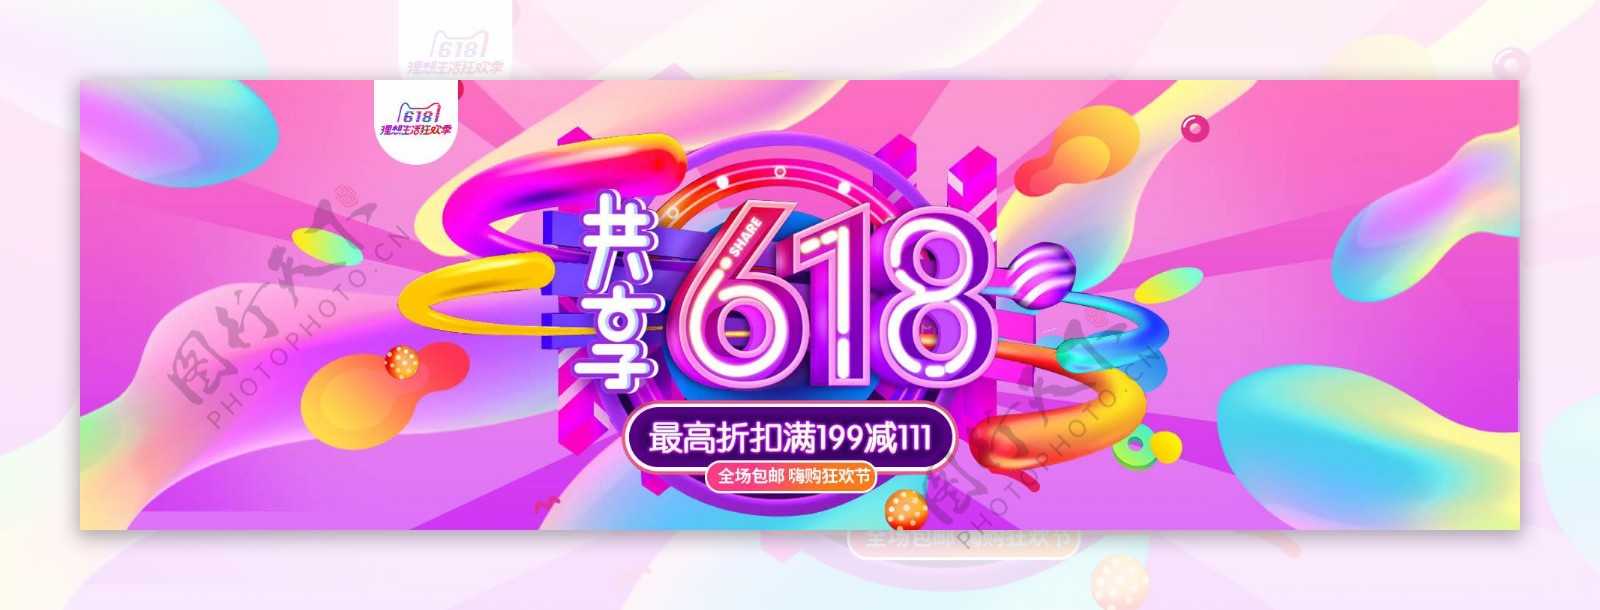 狂欢618宣传banner